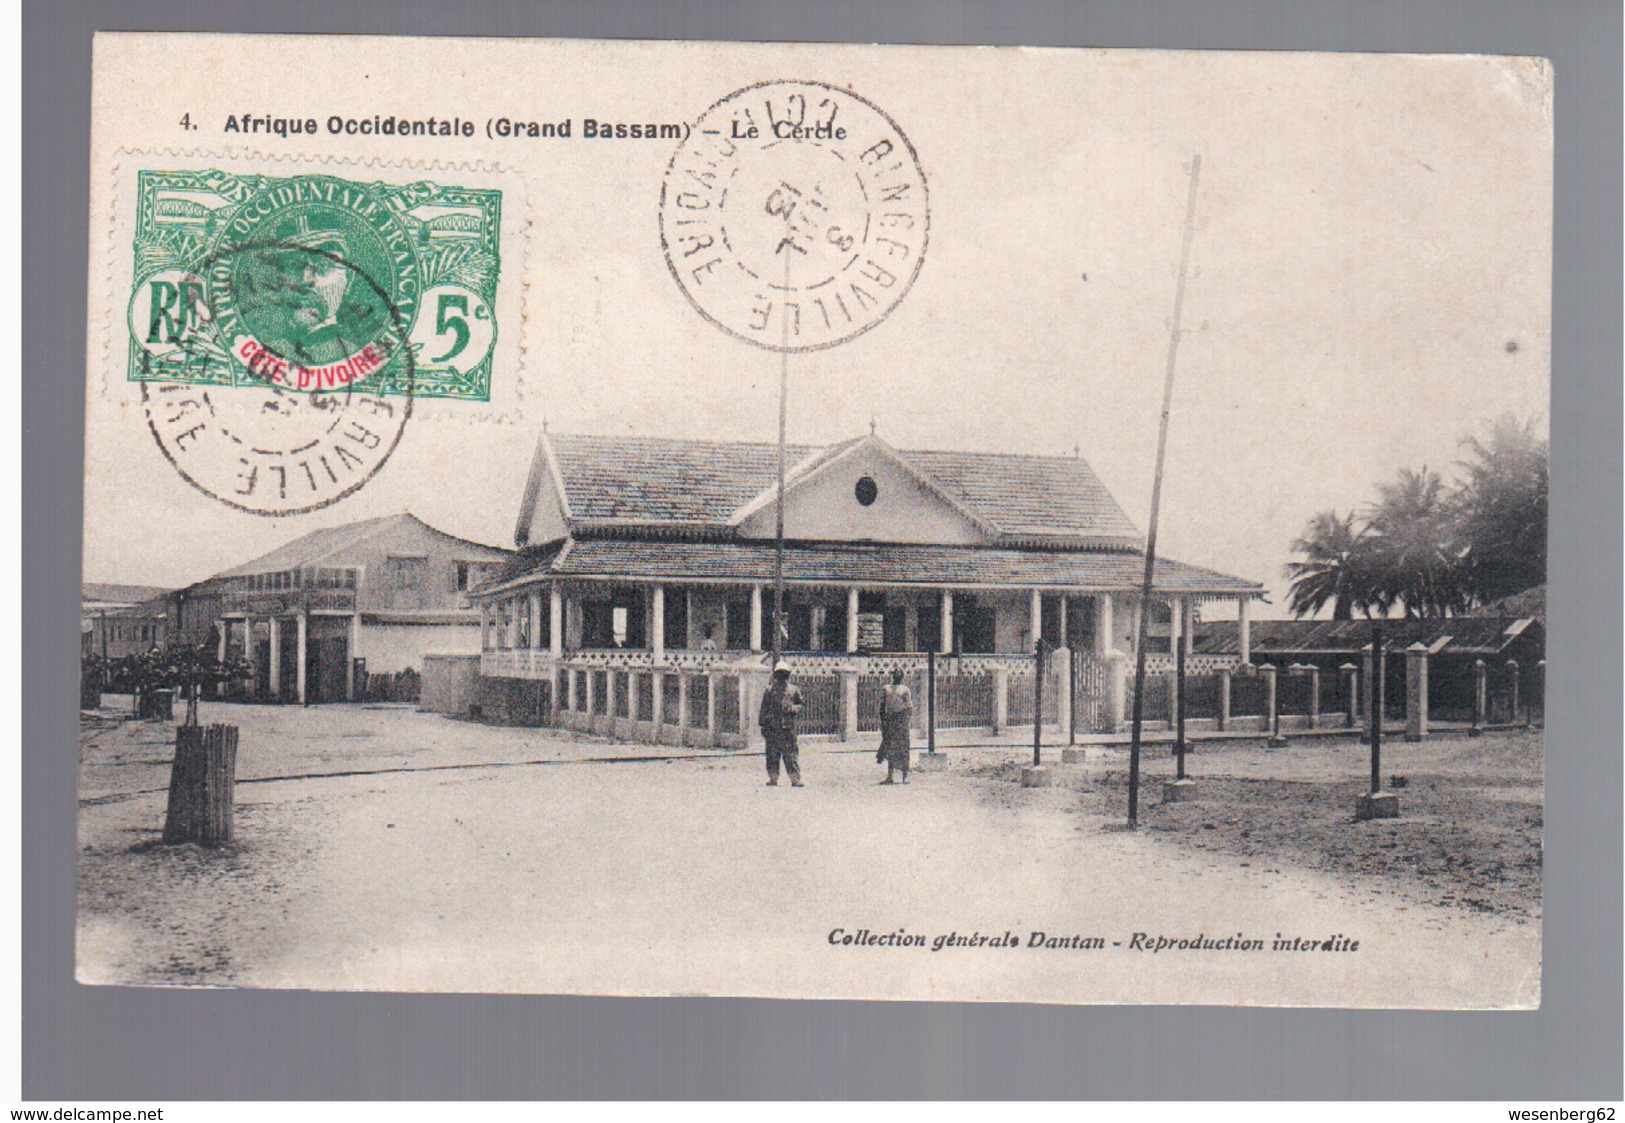 Cote D'Ivoire Grand Bassam- Le Cercle, Dantan 1913 OLD POSTCARD - Côte-d'Ivoire